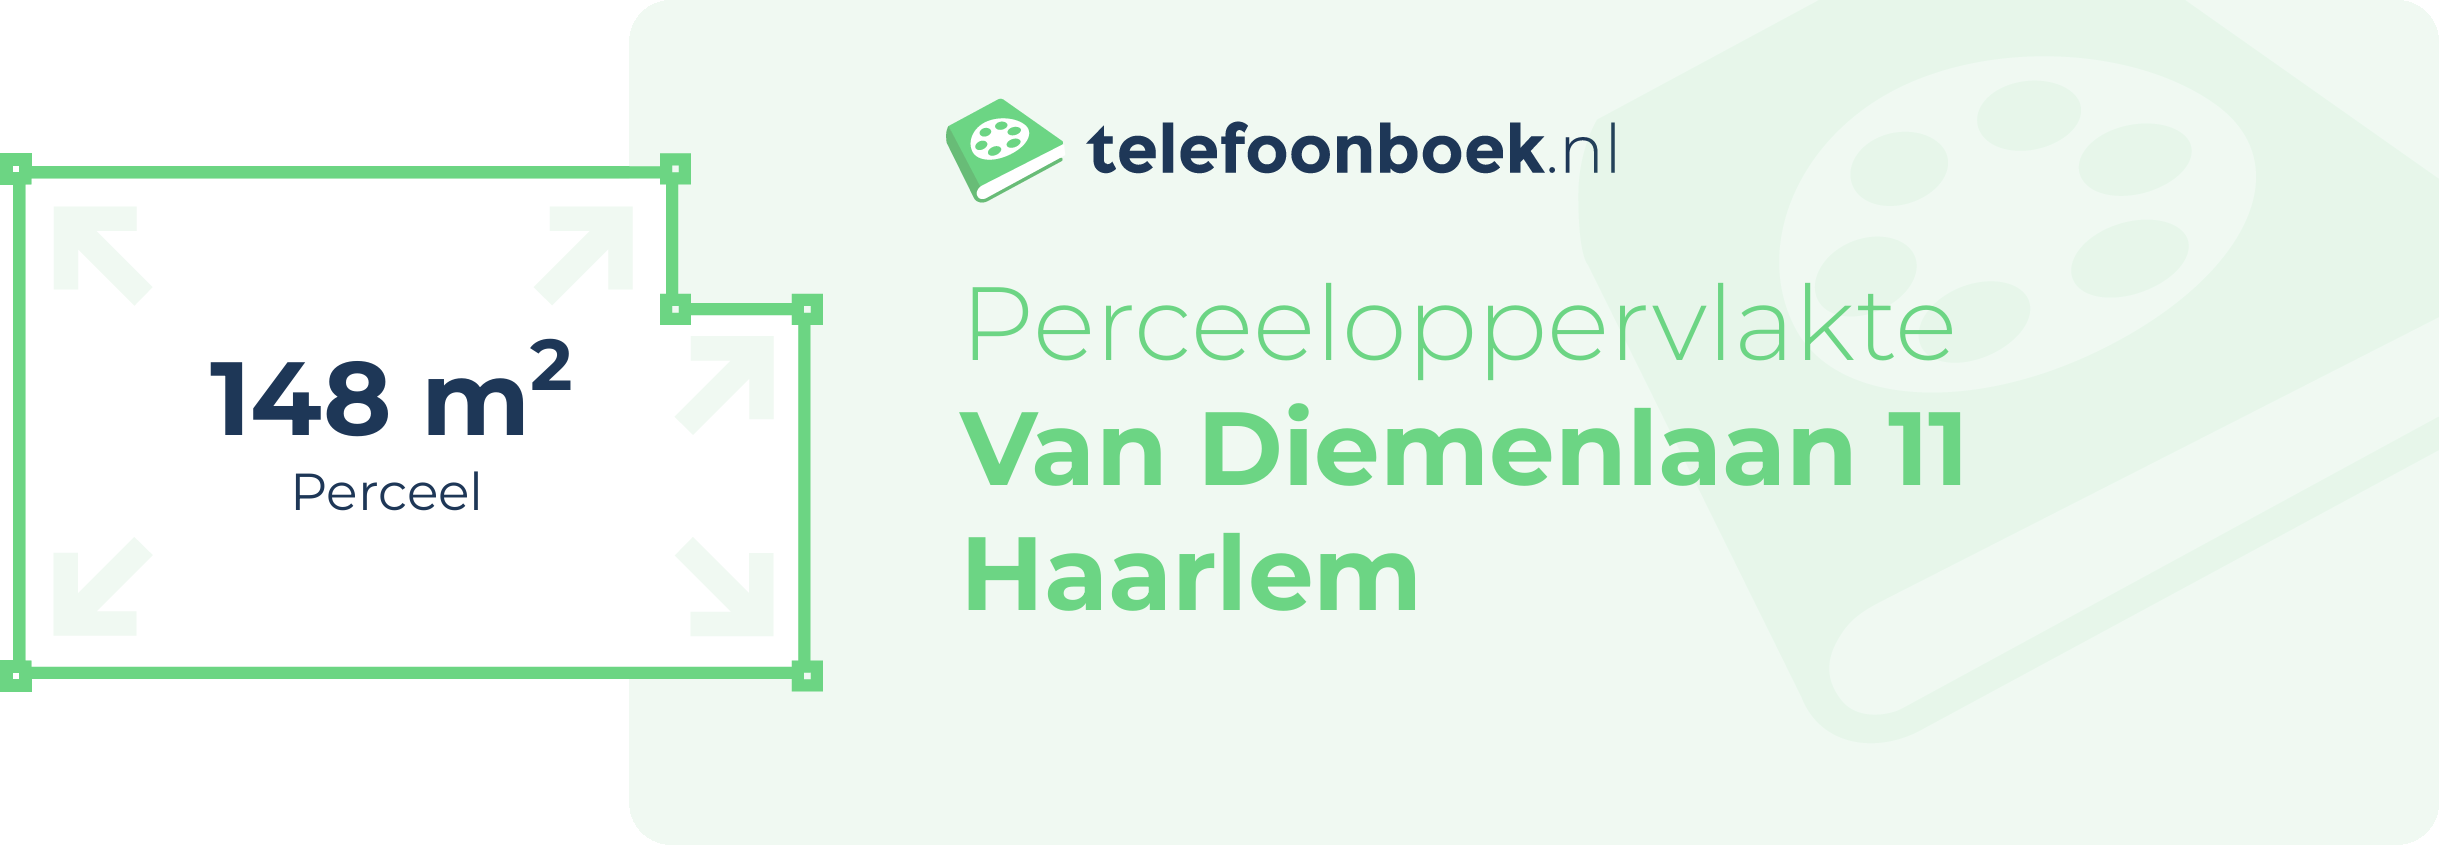 Perceeloppervlakte Van Diemenlaan 11 Haarlem